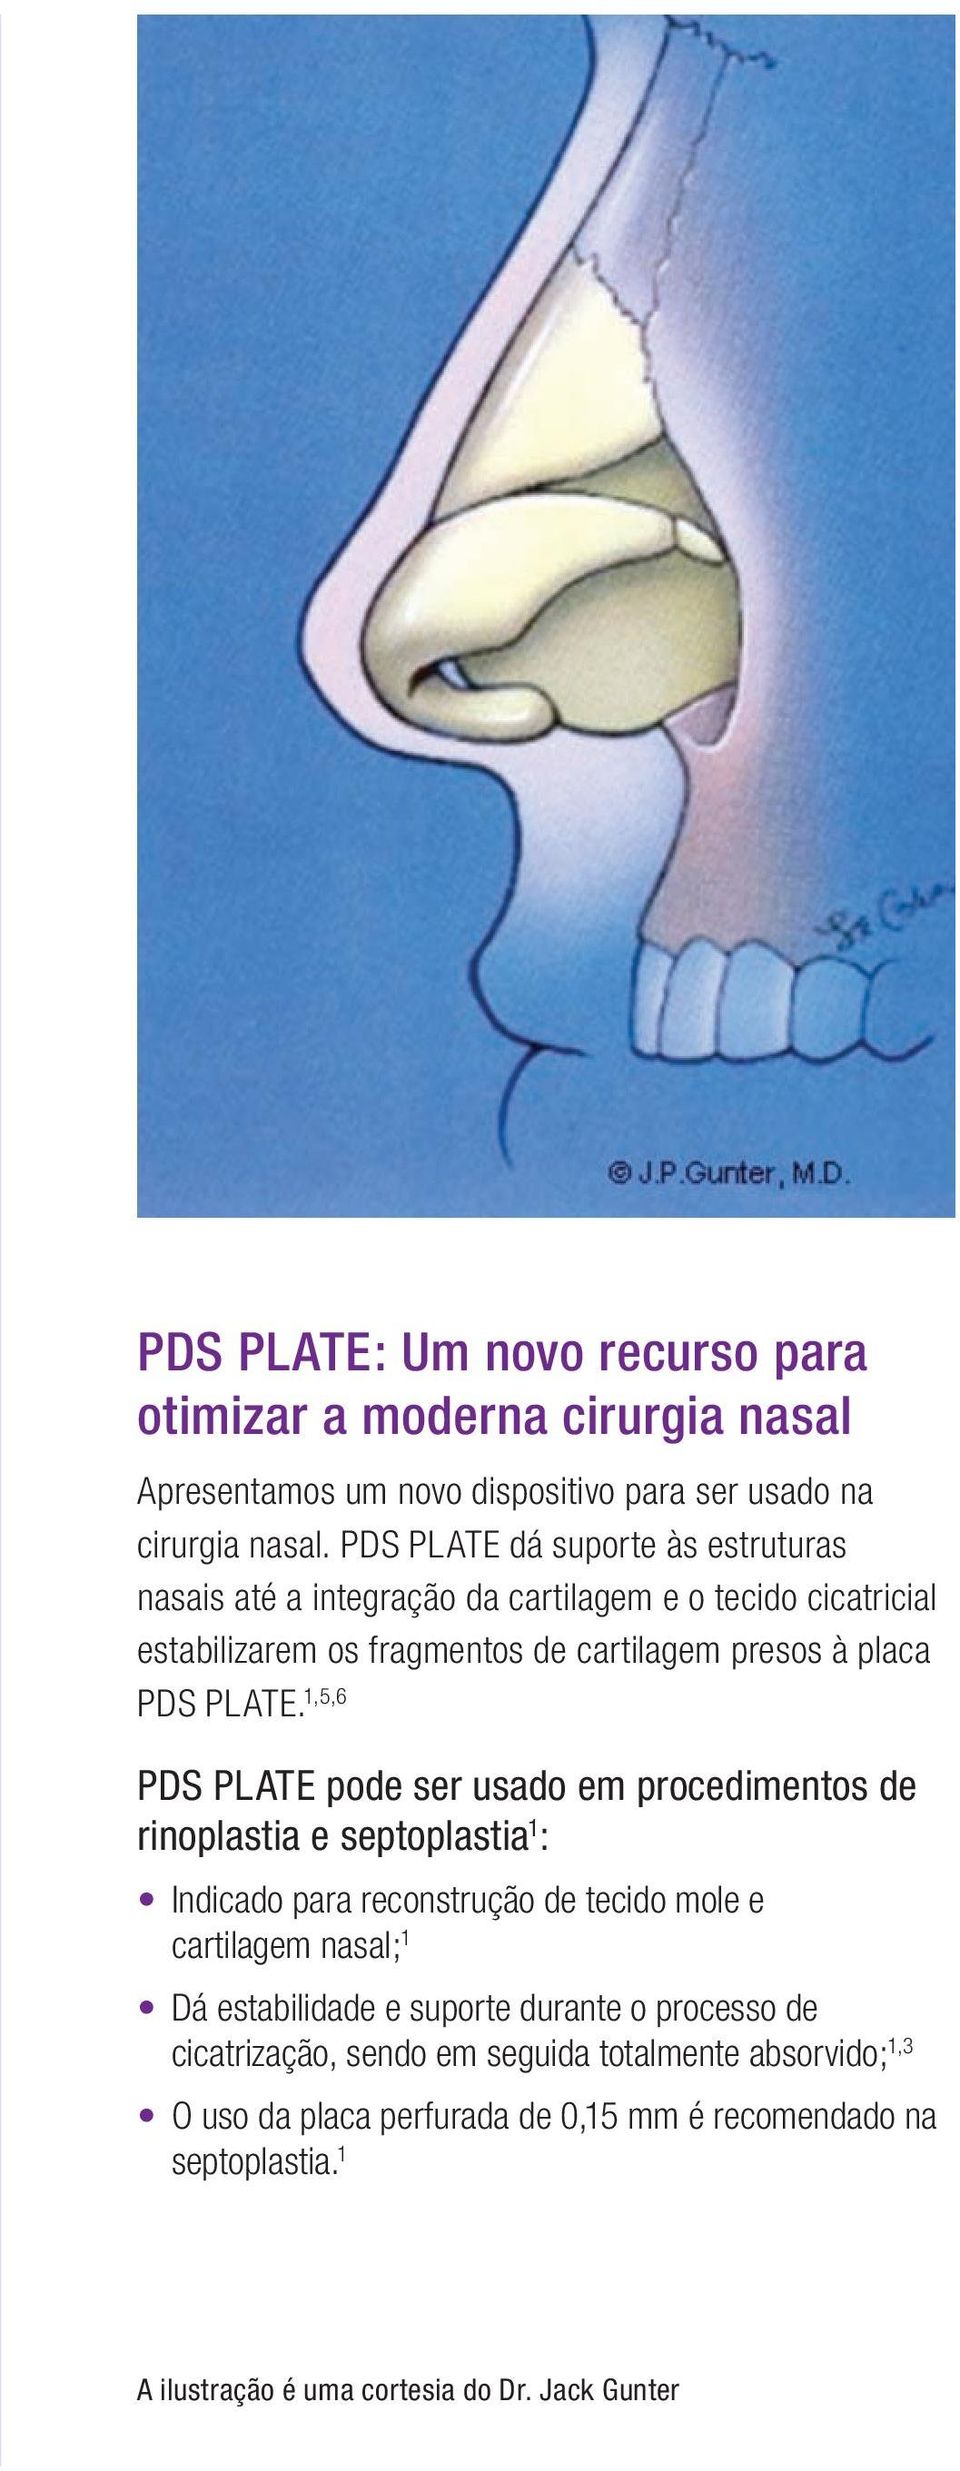 1,5,6 PDS PLATE pode ser usado em procedimentos de rinoplastia e septoplastia 1 : Indicado para reconstrução de tecido mole e cartilagem nasal; 1 Dá estabilidade e